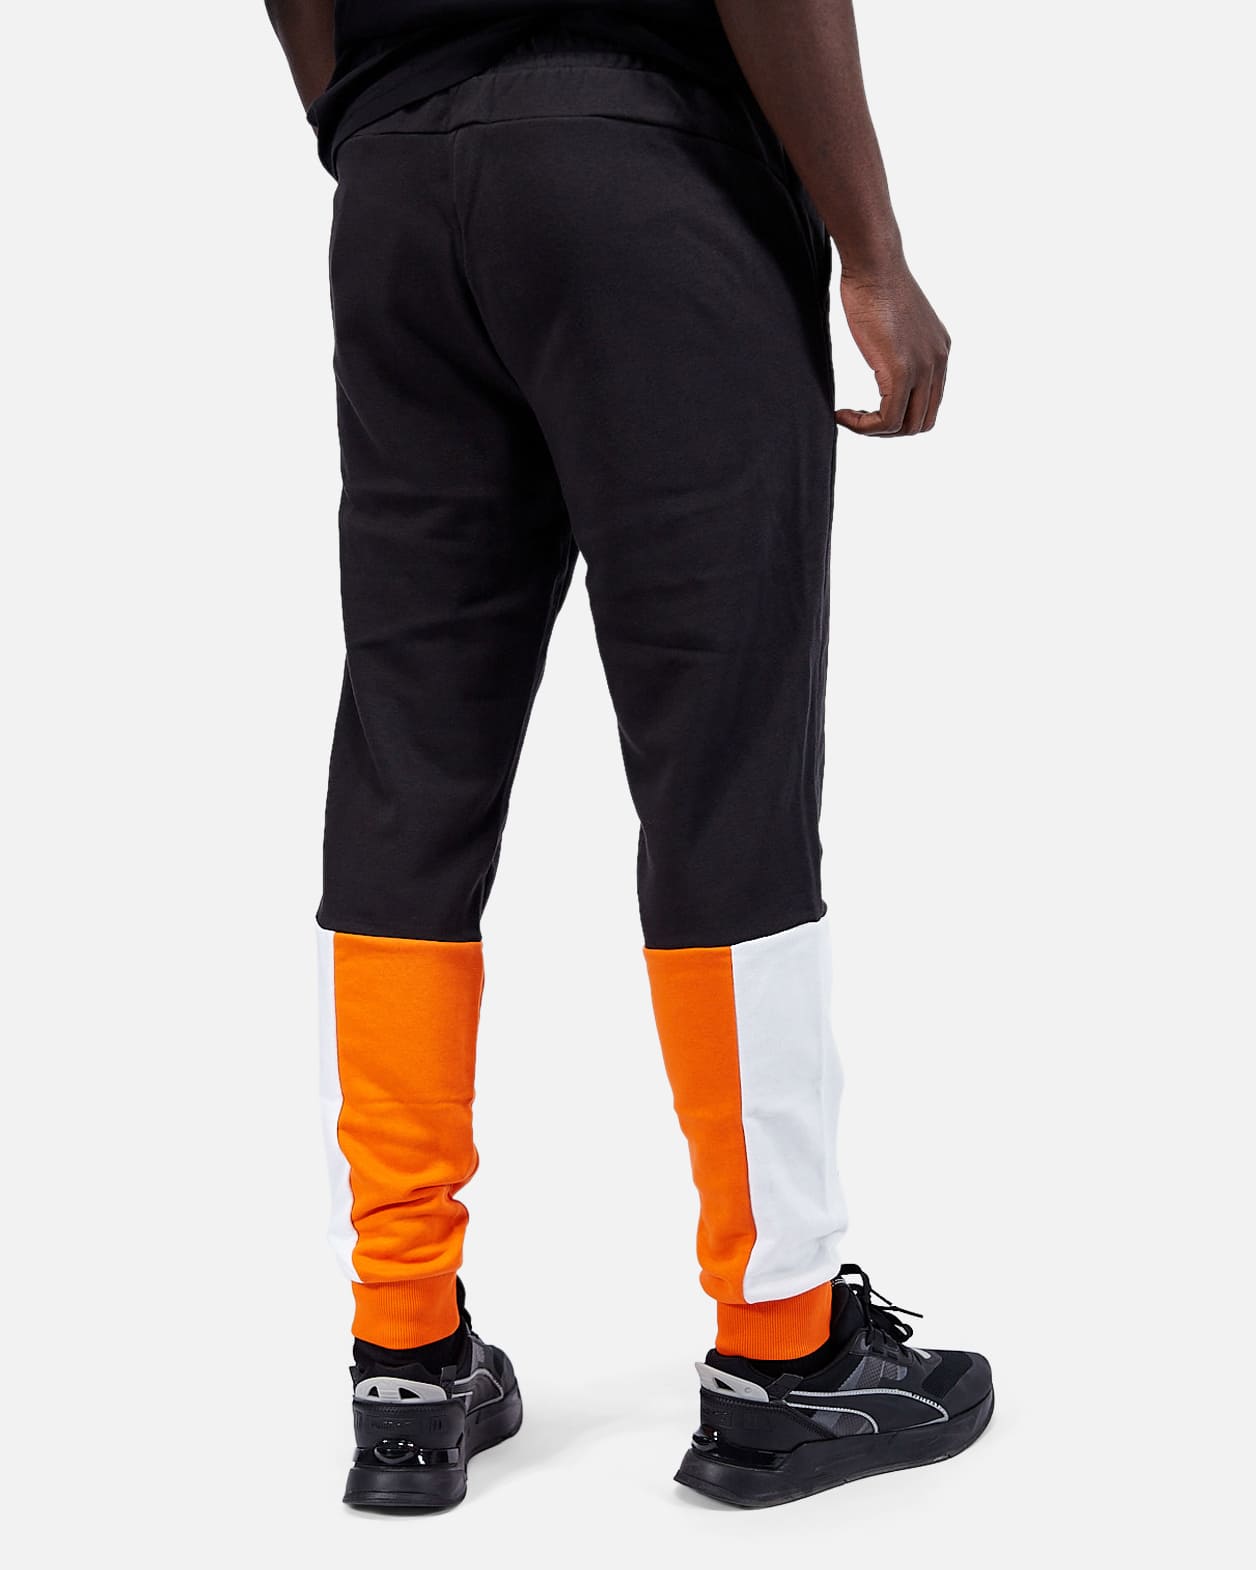 Pantalones Puma Power - Naranja/Blanco/Negro